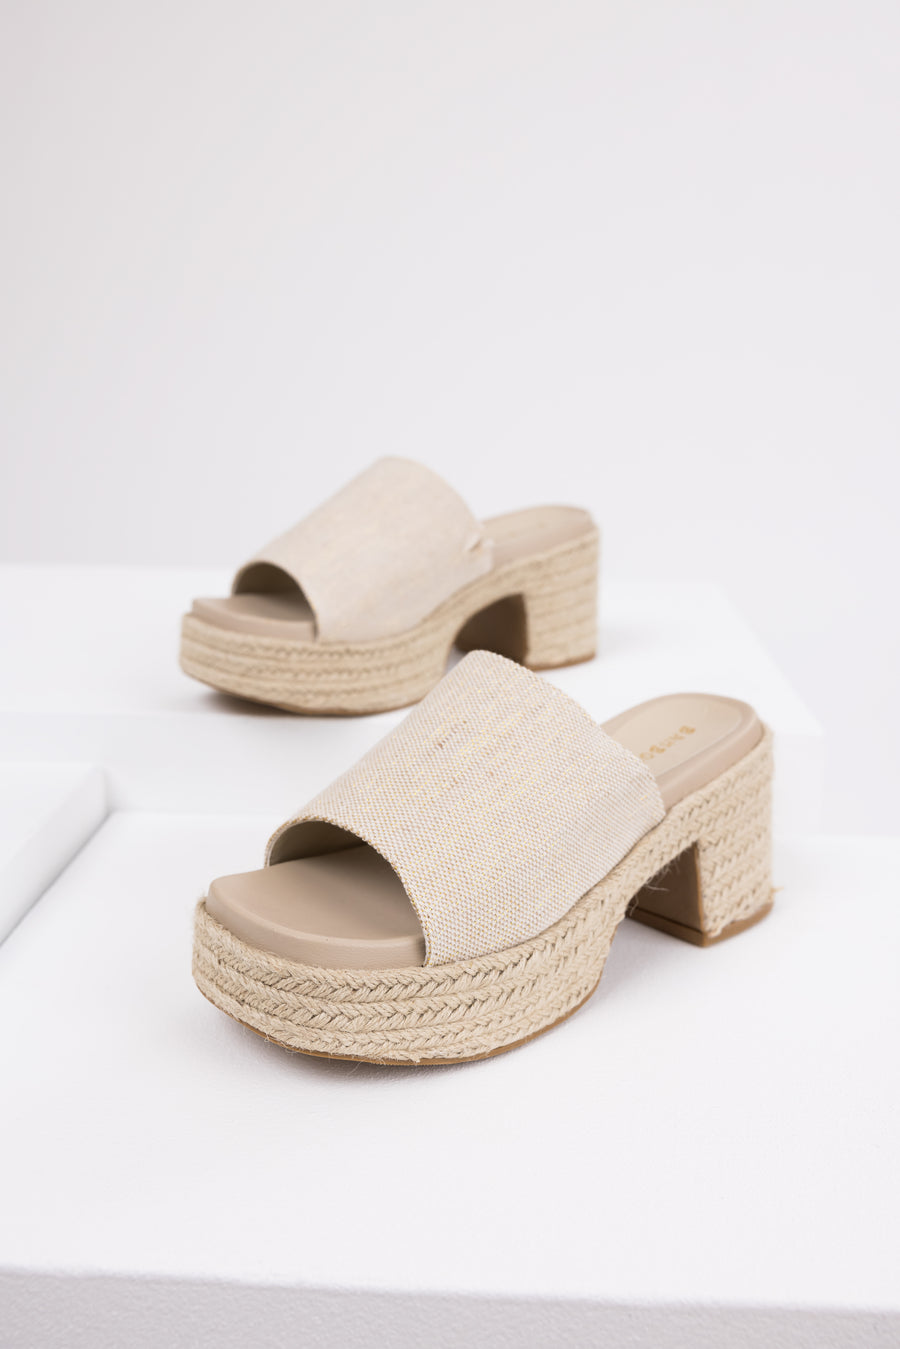 Vanilla Espadrille Platform Heeled Sandals